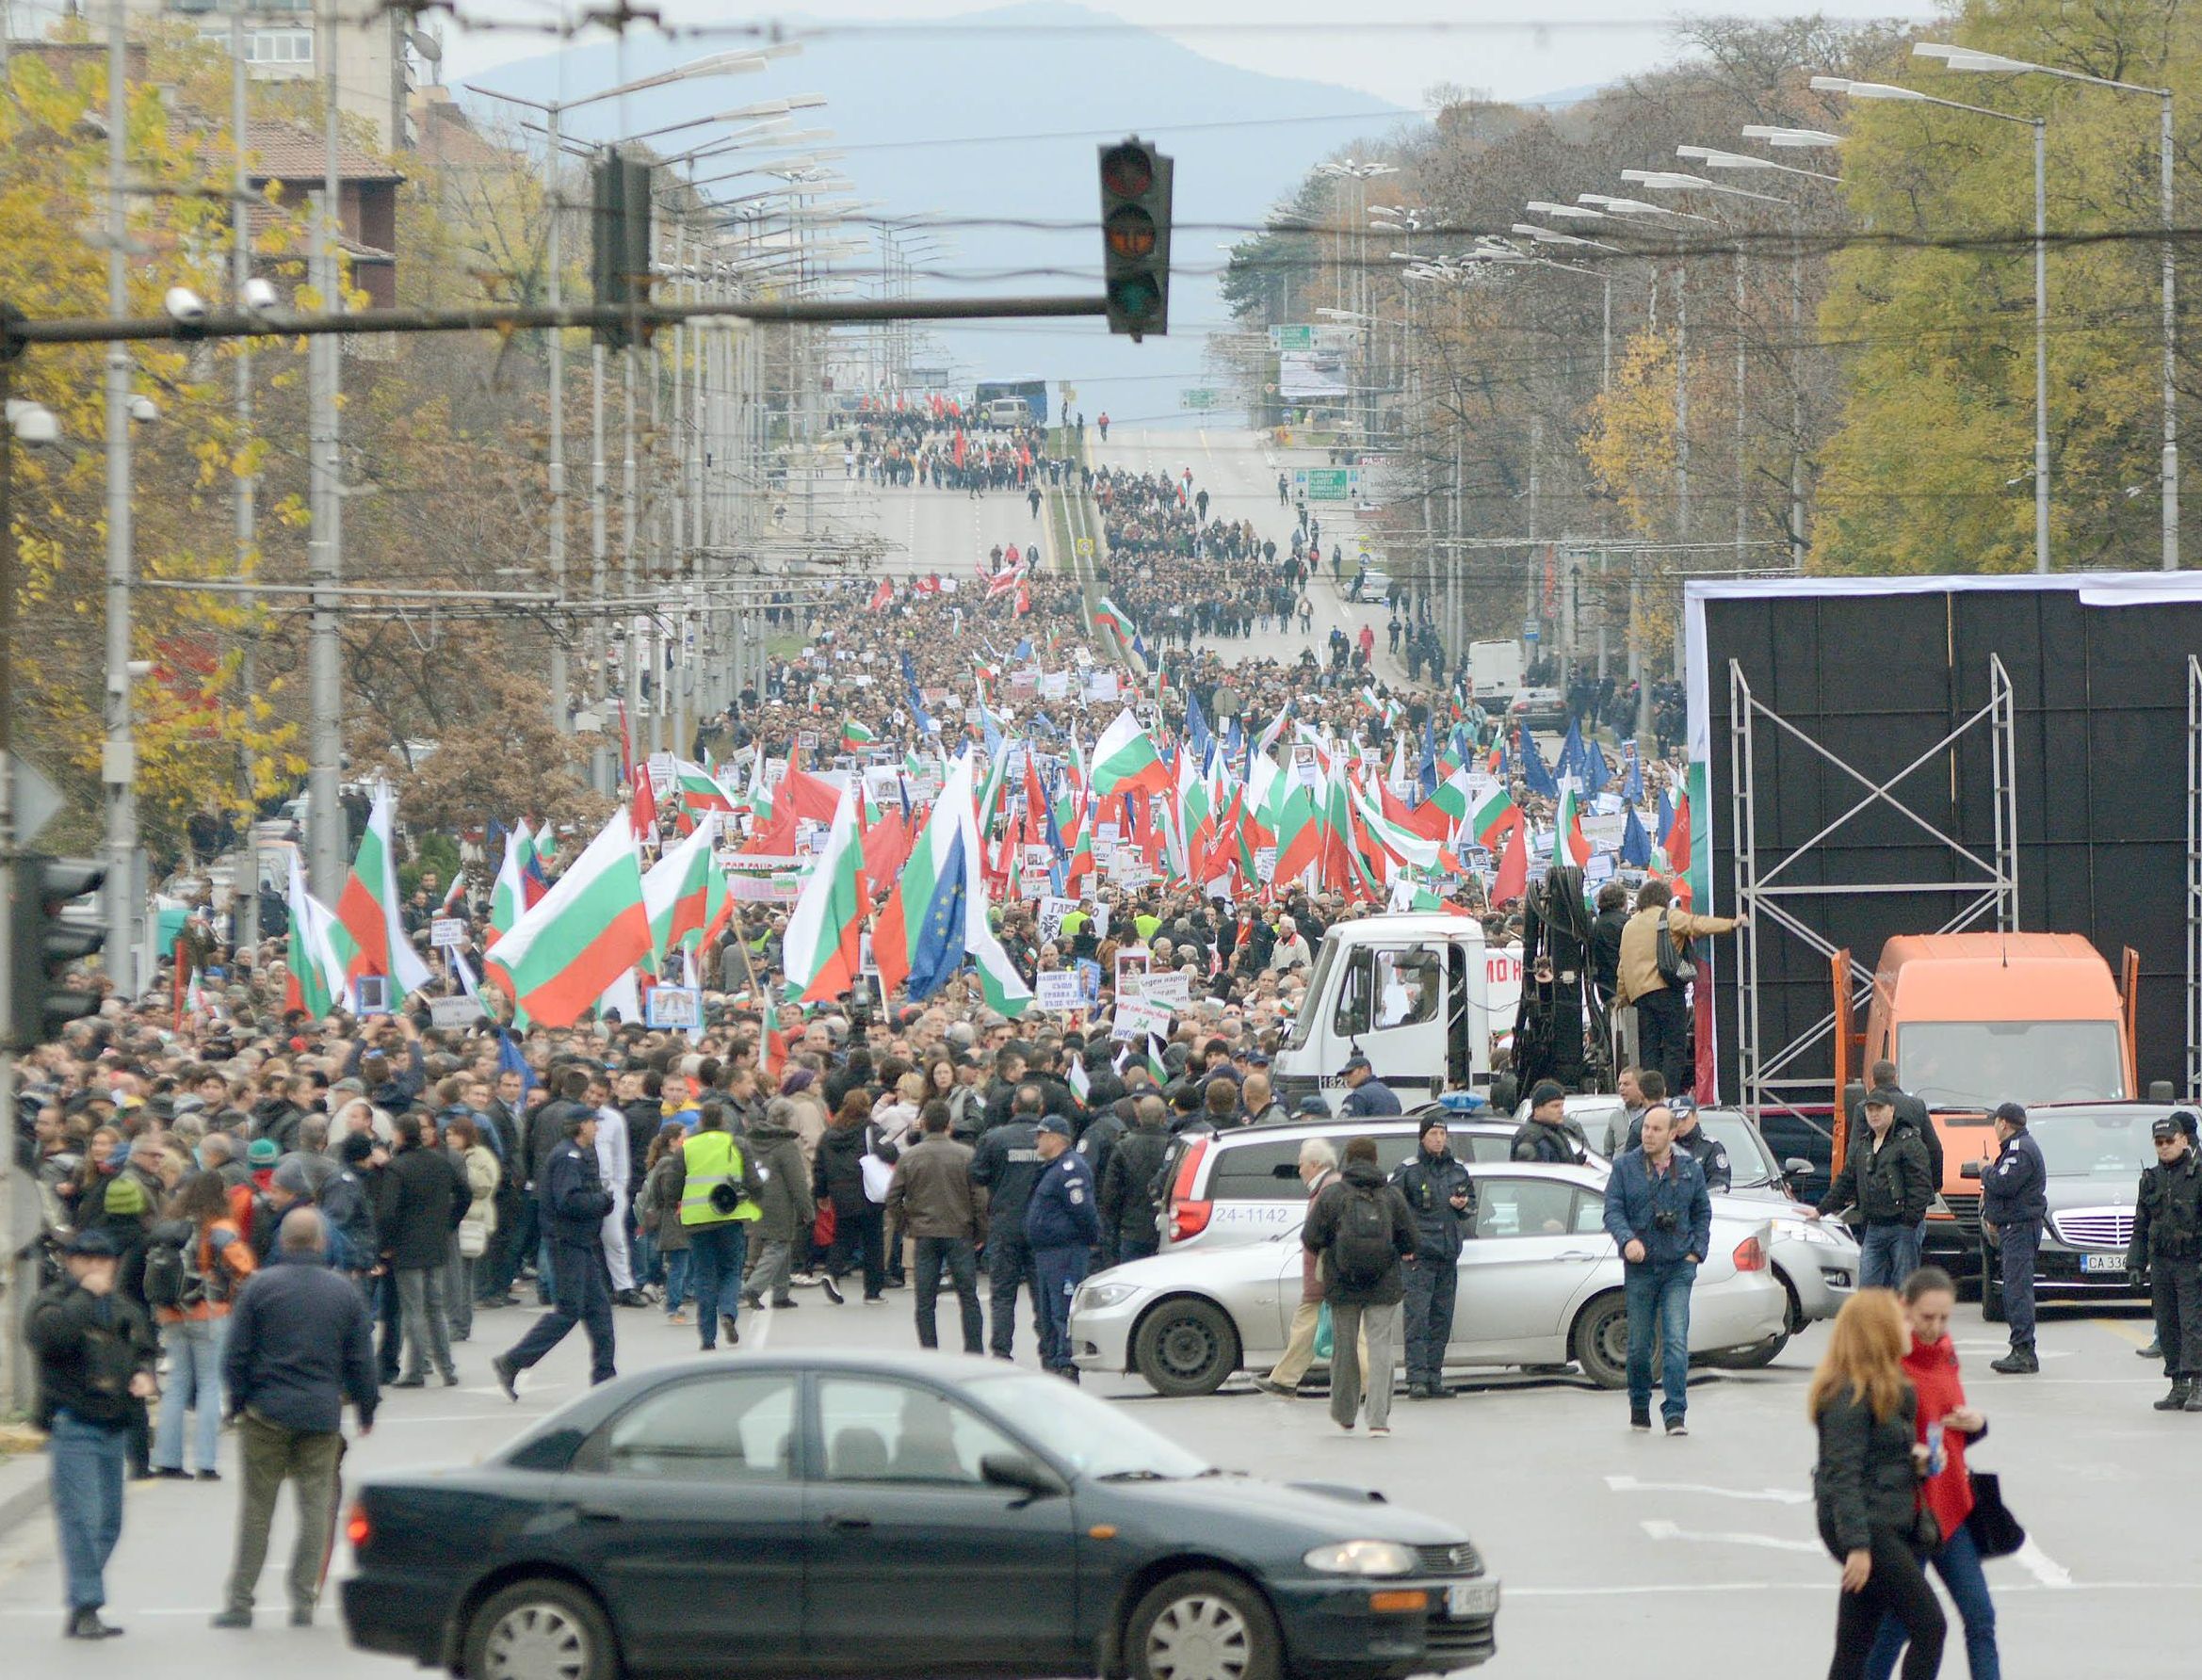 МВР: 50 хиляди души в София, 15 хиляди души в Пловдив